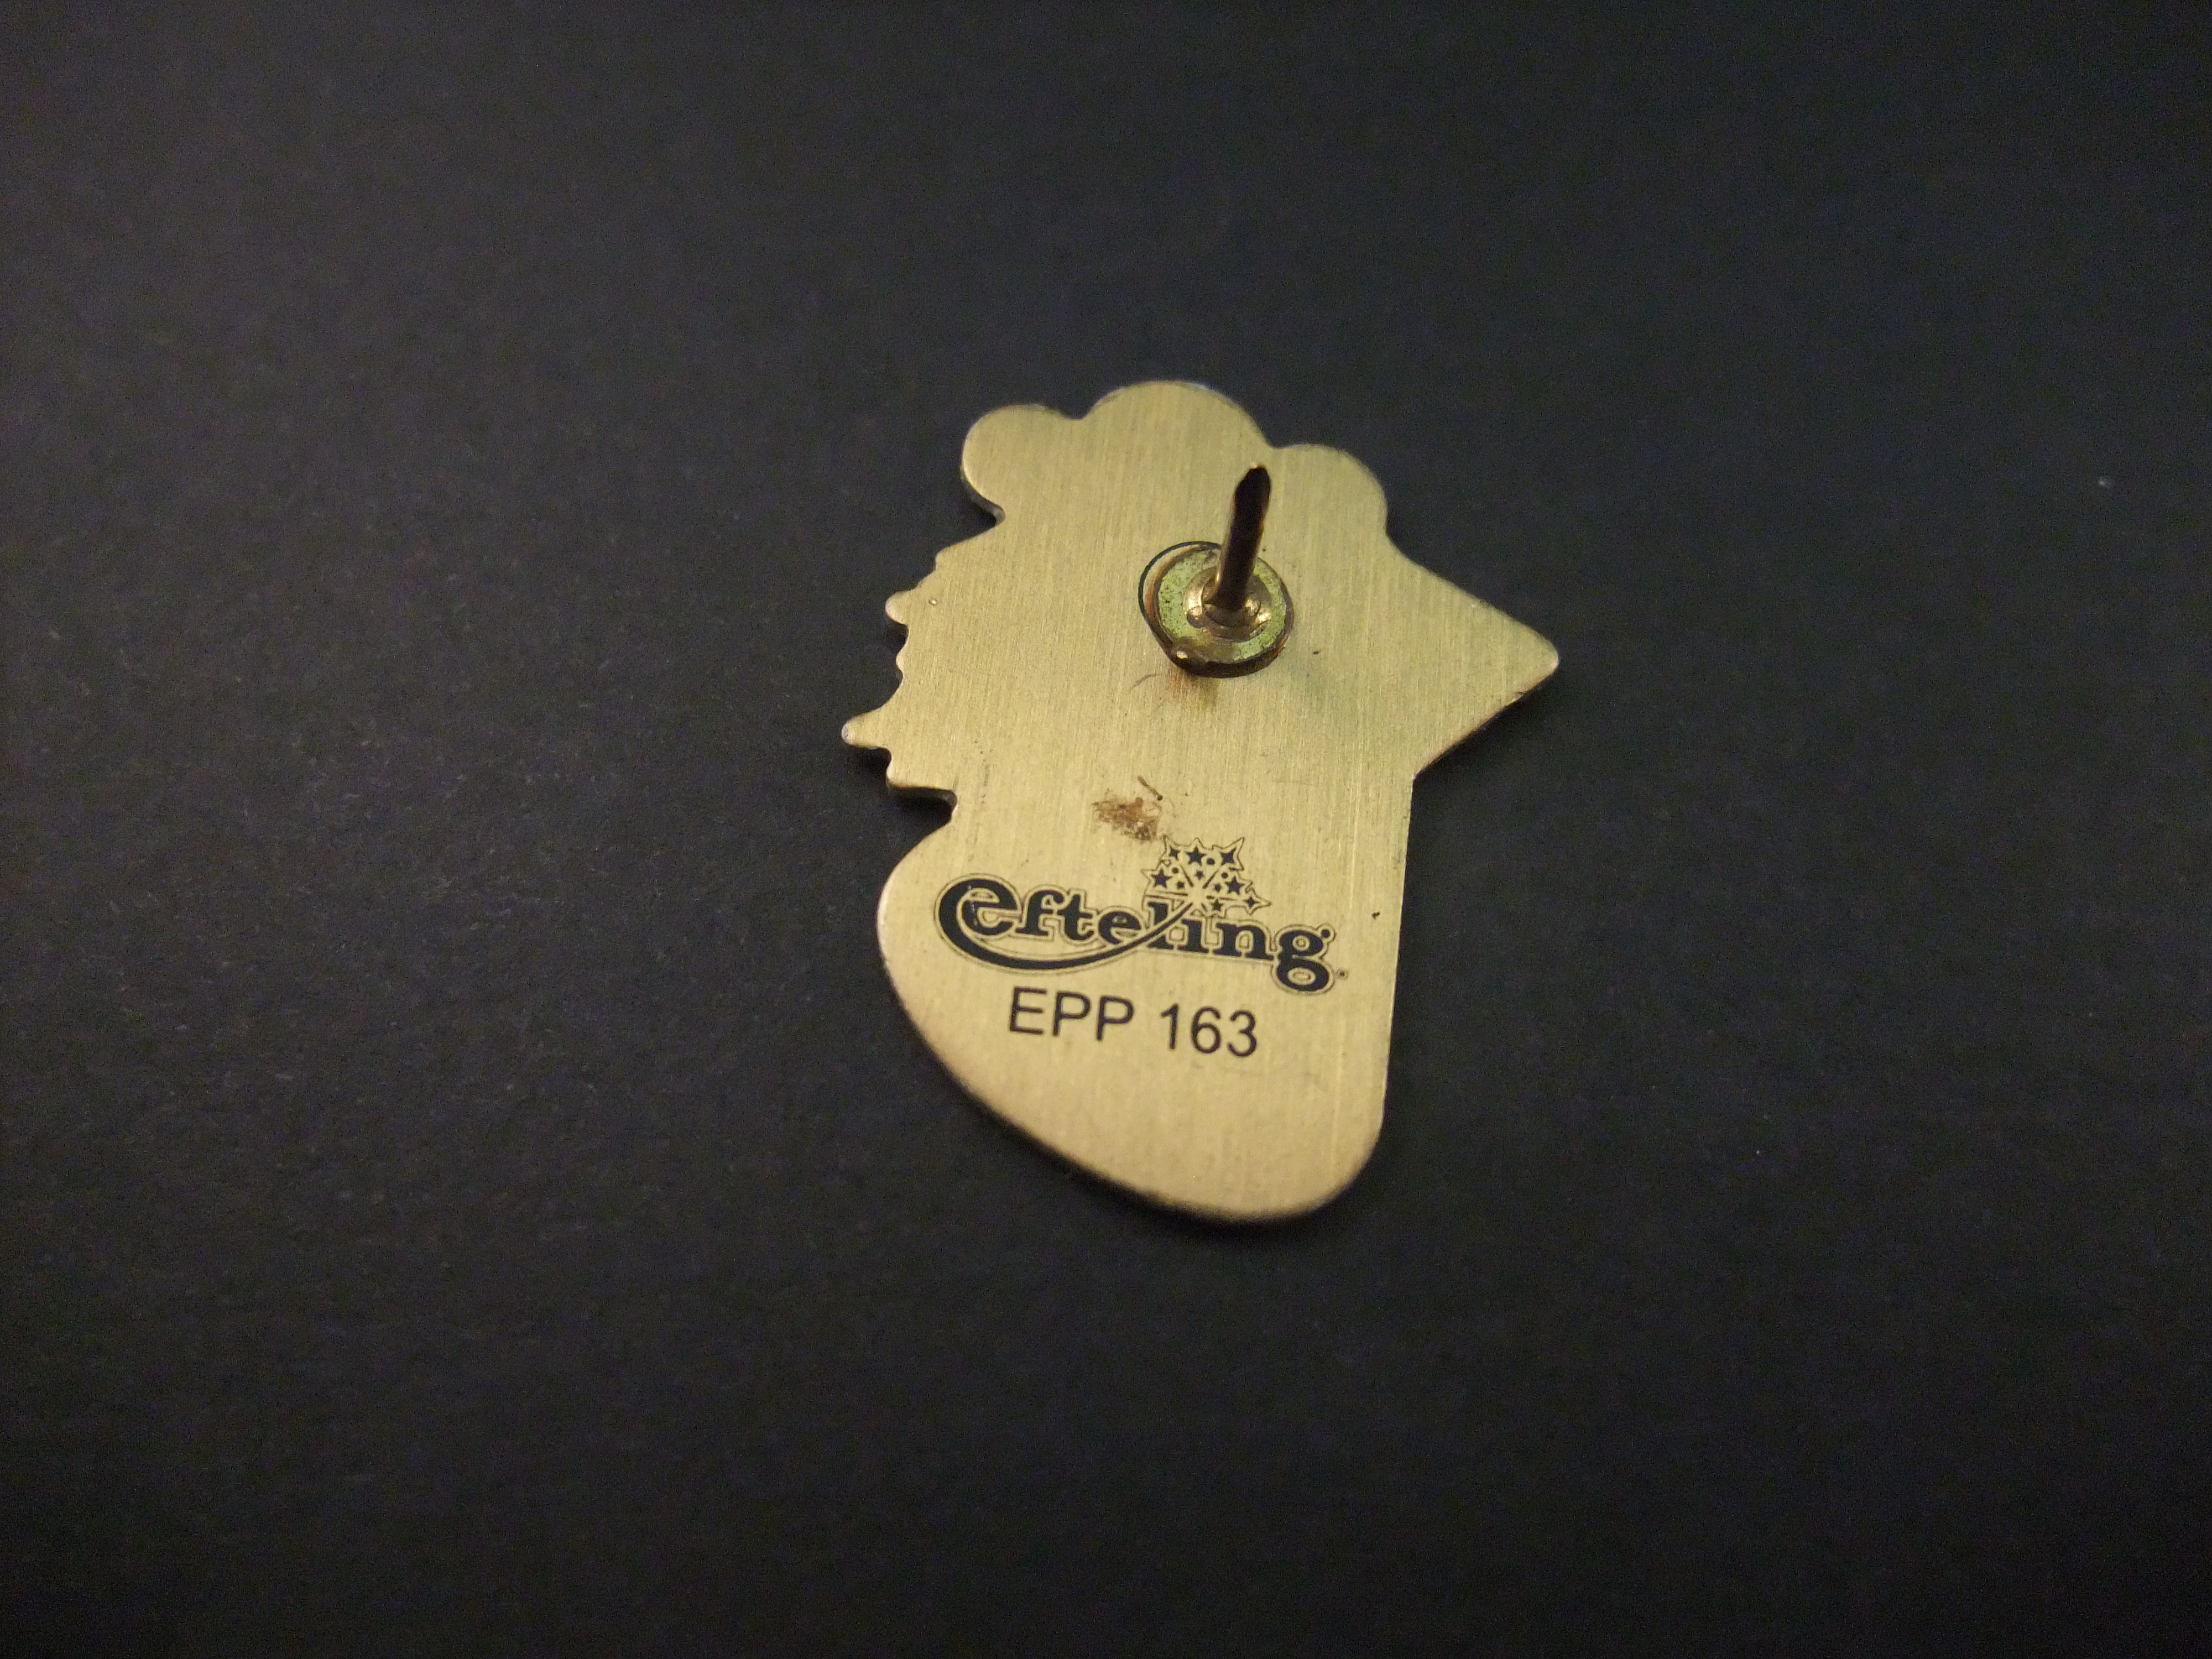 Efteling TiTaTovenaar 2010 EPP 163 (2)